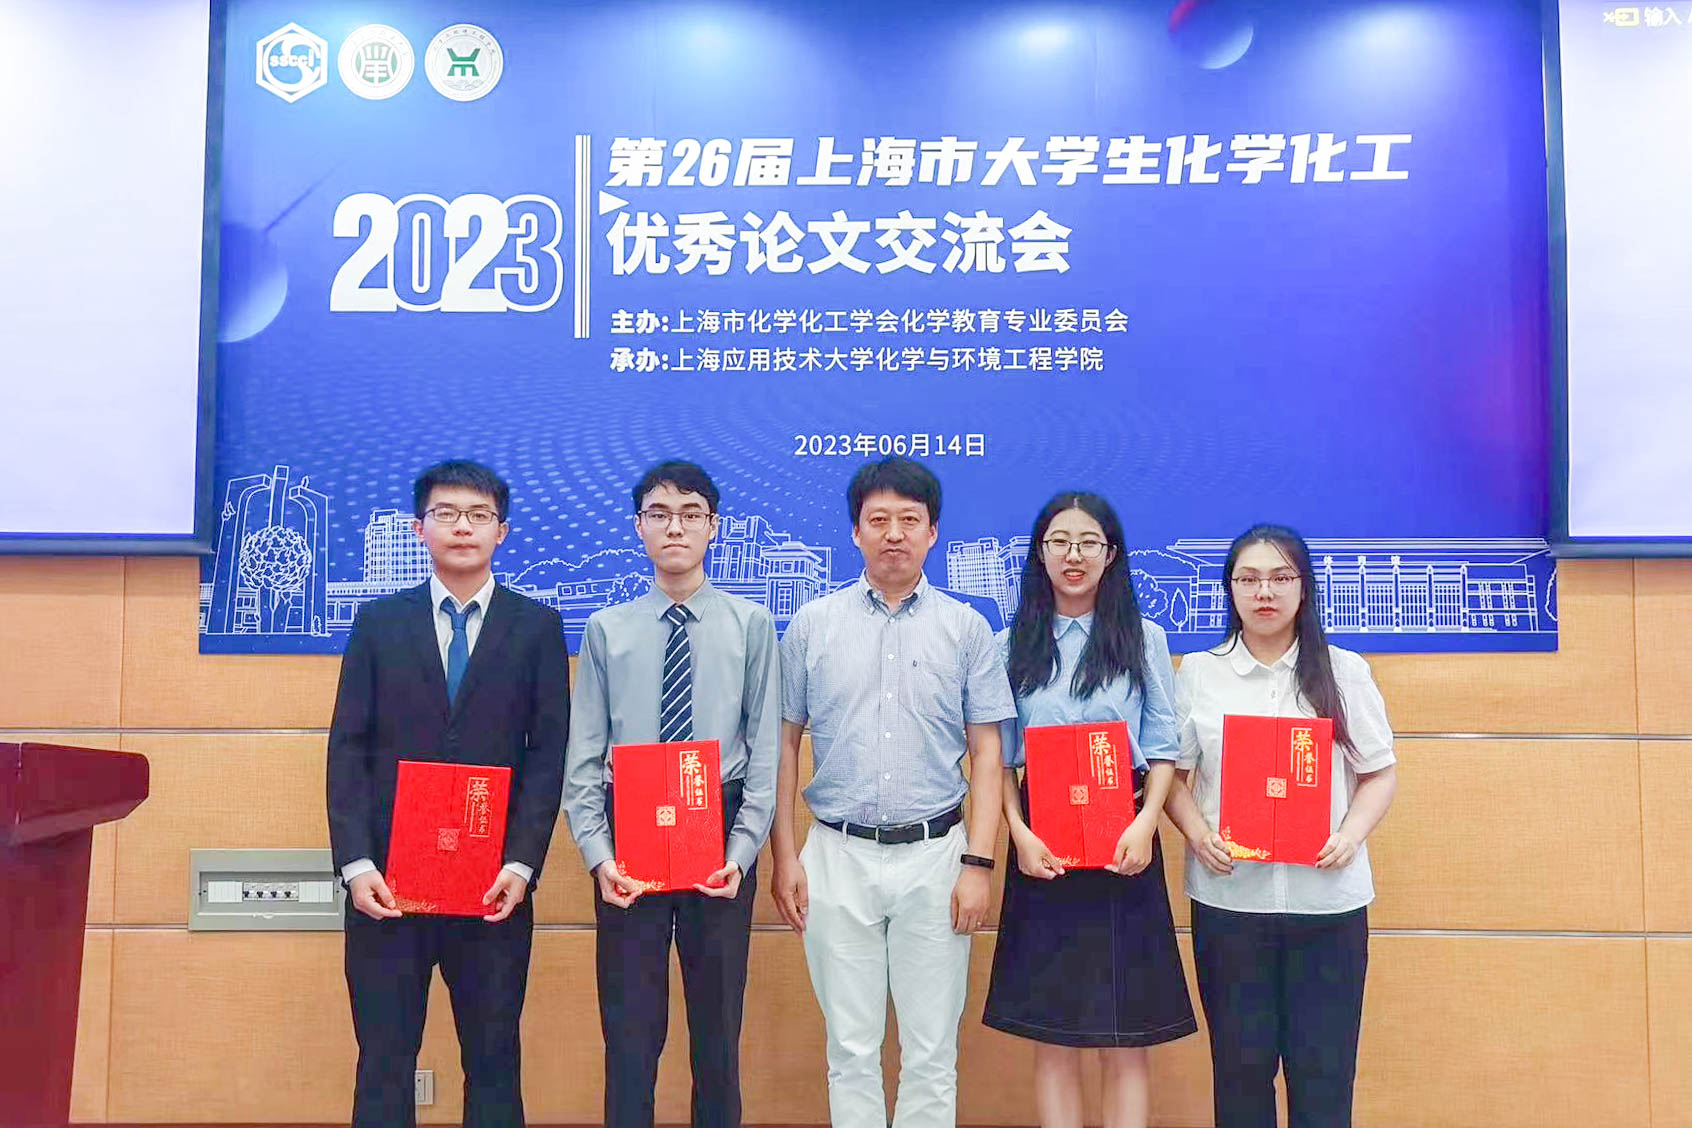 化院本科毕业生在第26届上海市大学生化学化工优秀论文大赛上获2个特等奖，2个一等奖